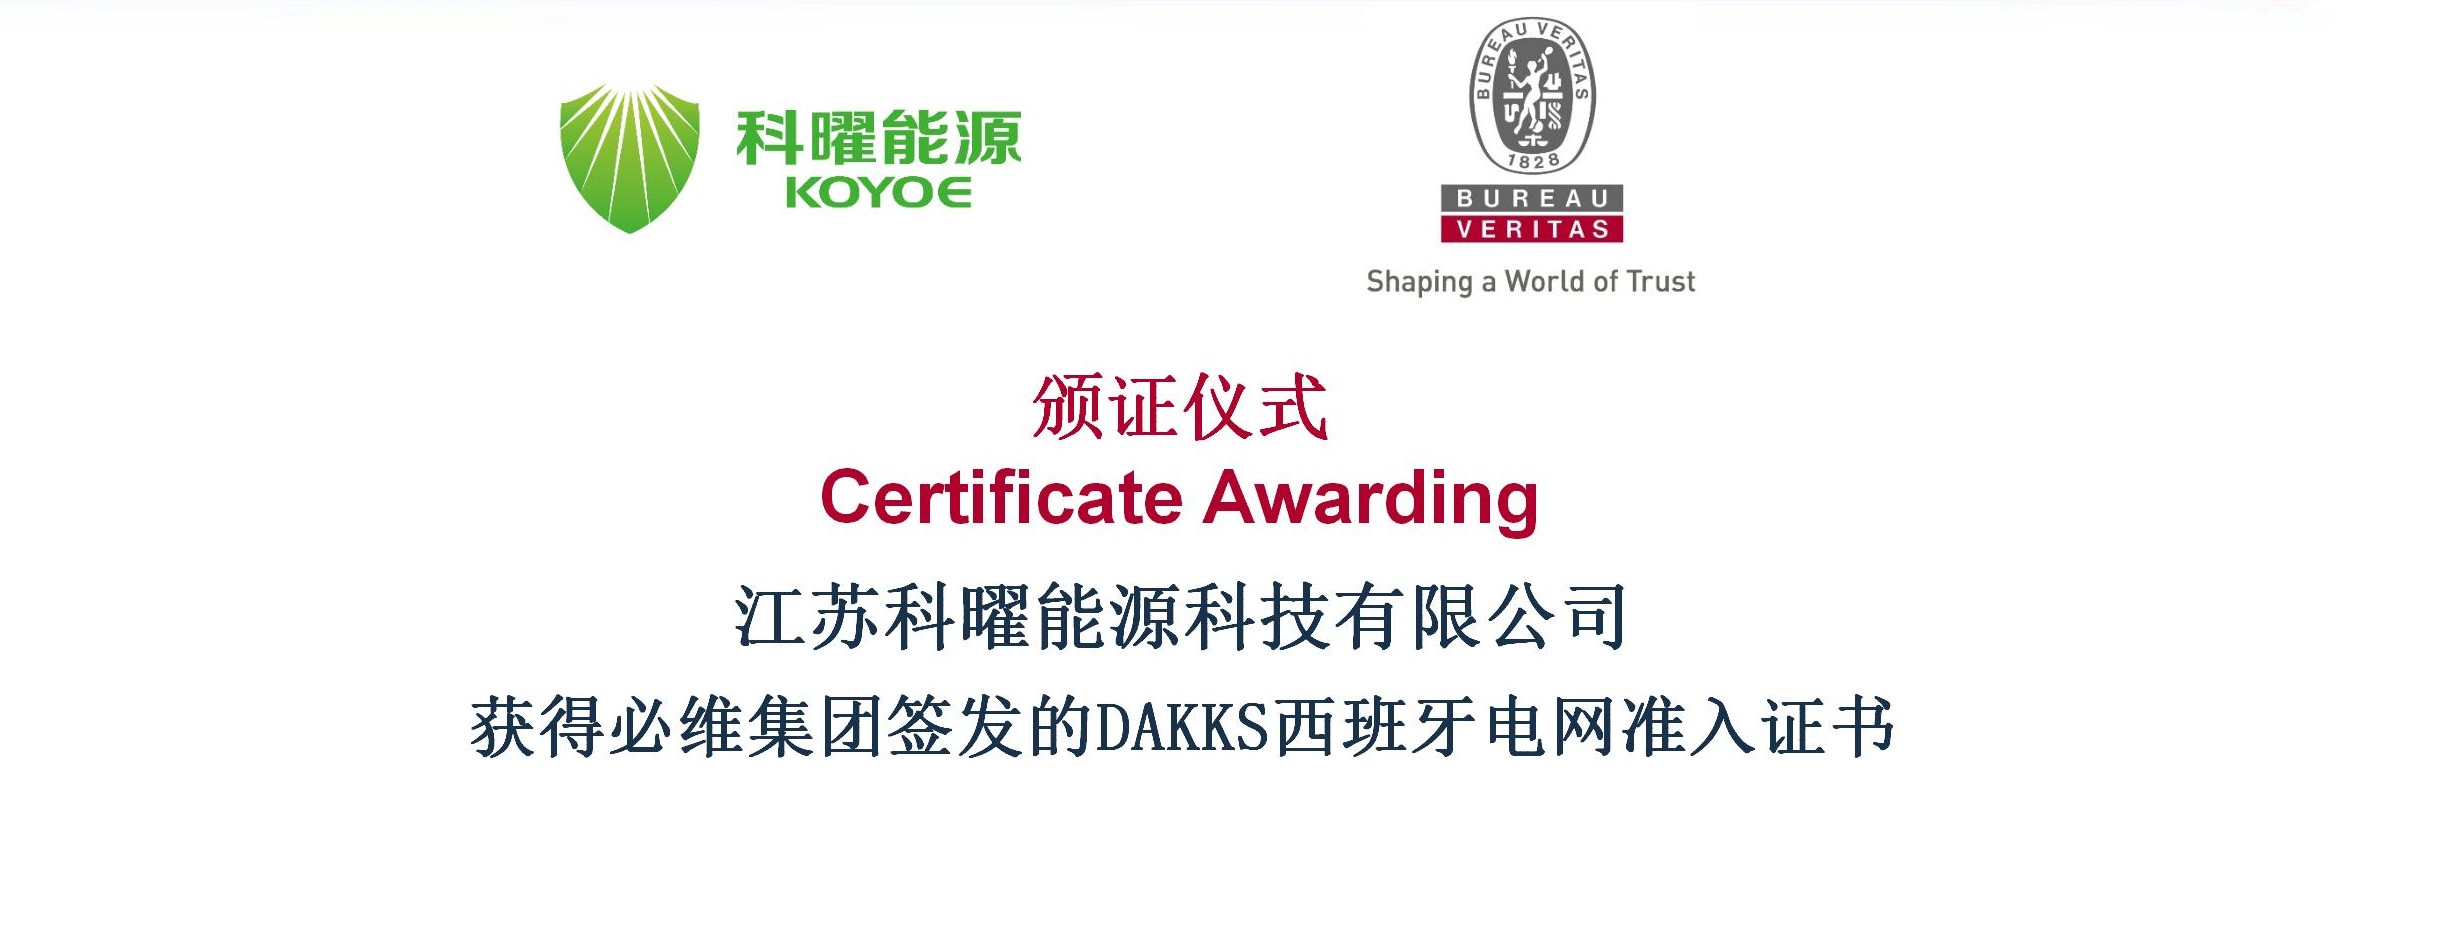 动态丨科曜能源混合逆变器成功获得必维集团签发的DAKKS西班牙电网准入证书